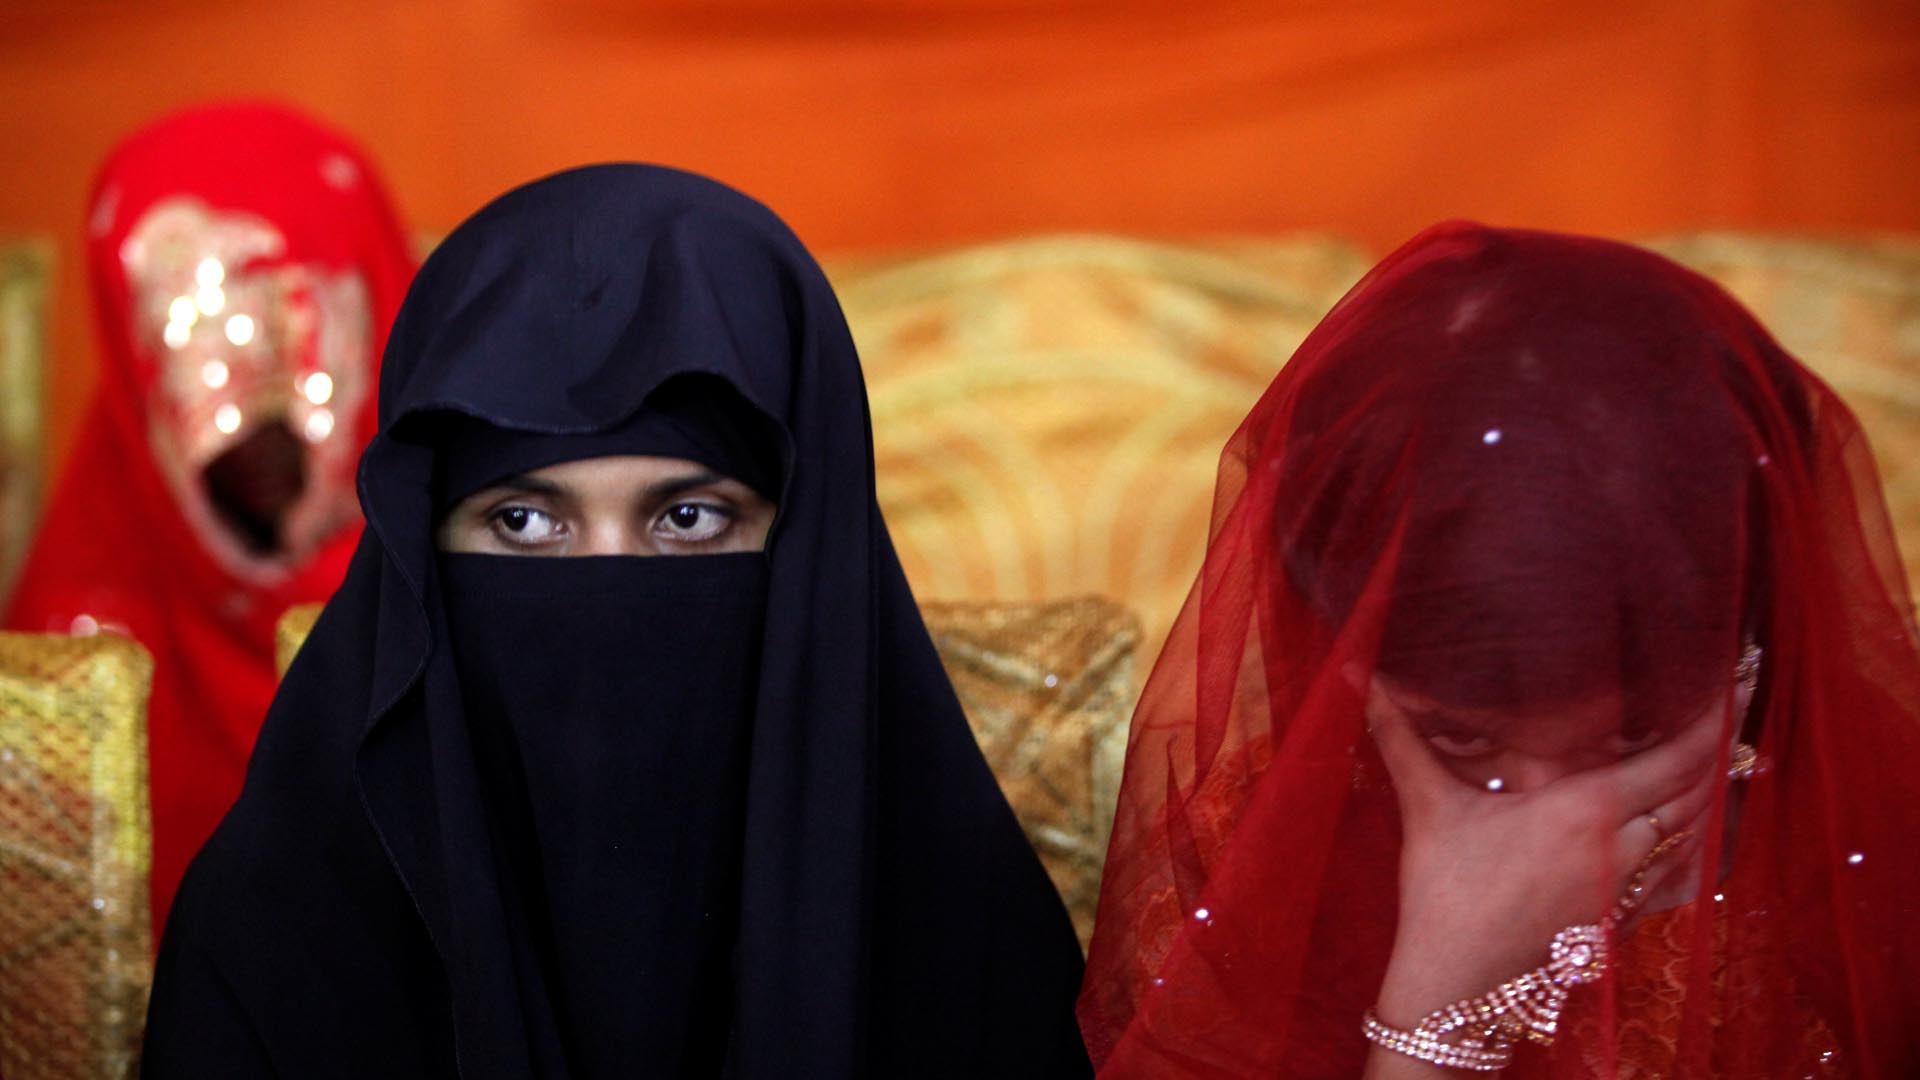 Los “crímenes de honor” han intensificado en países asiáticos, solo en 2015, 923 mujeres fueron víctimas en Pakistán